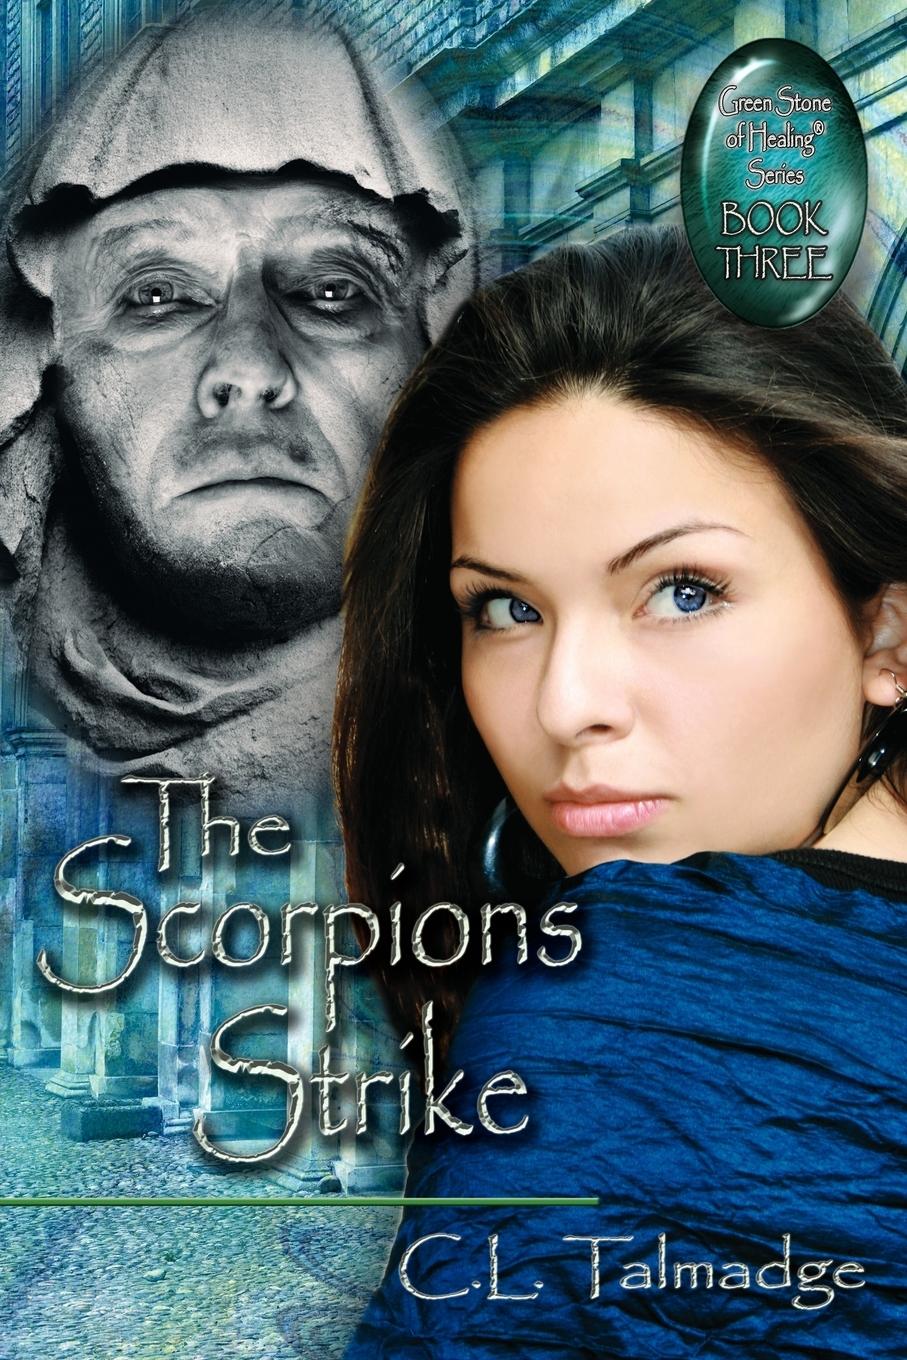 The Scorpions Strike - Talmadge, C. L.